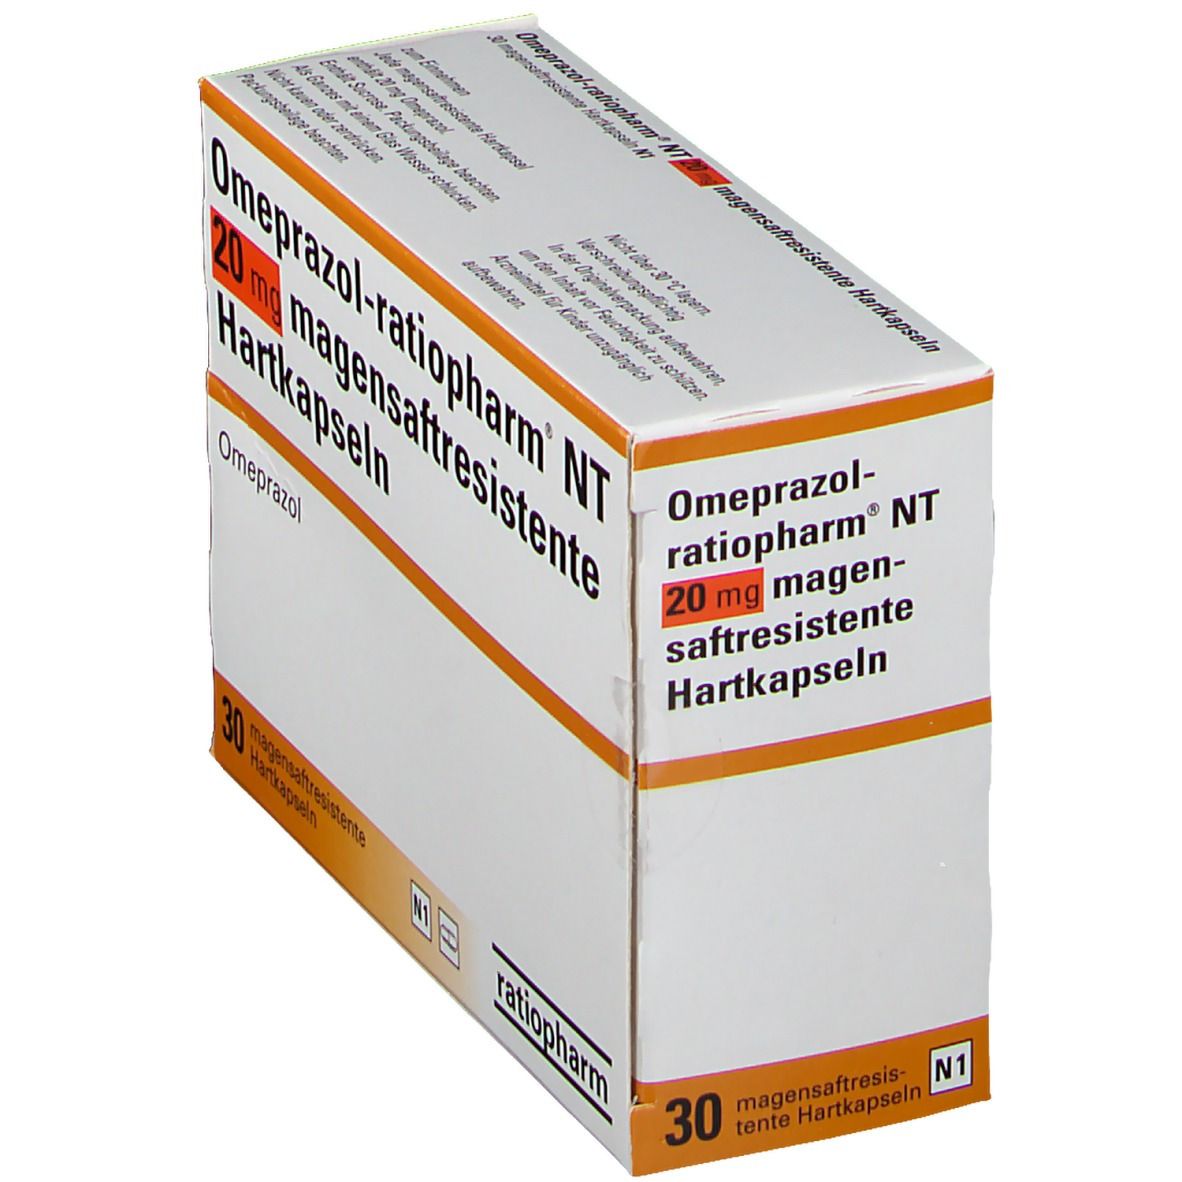 Omeprazol-ratiopharm® NT 20 mg